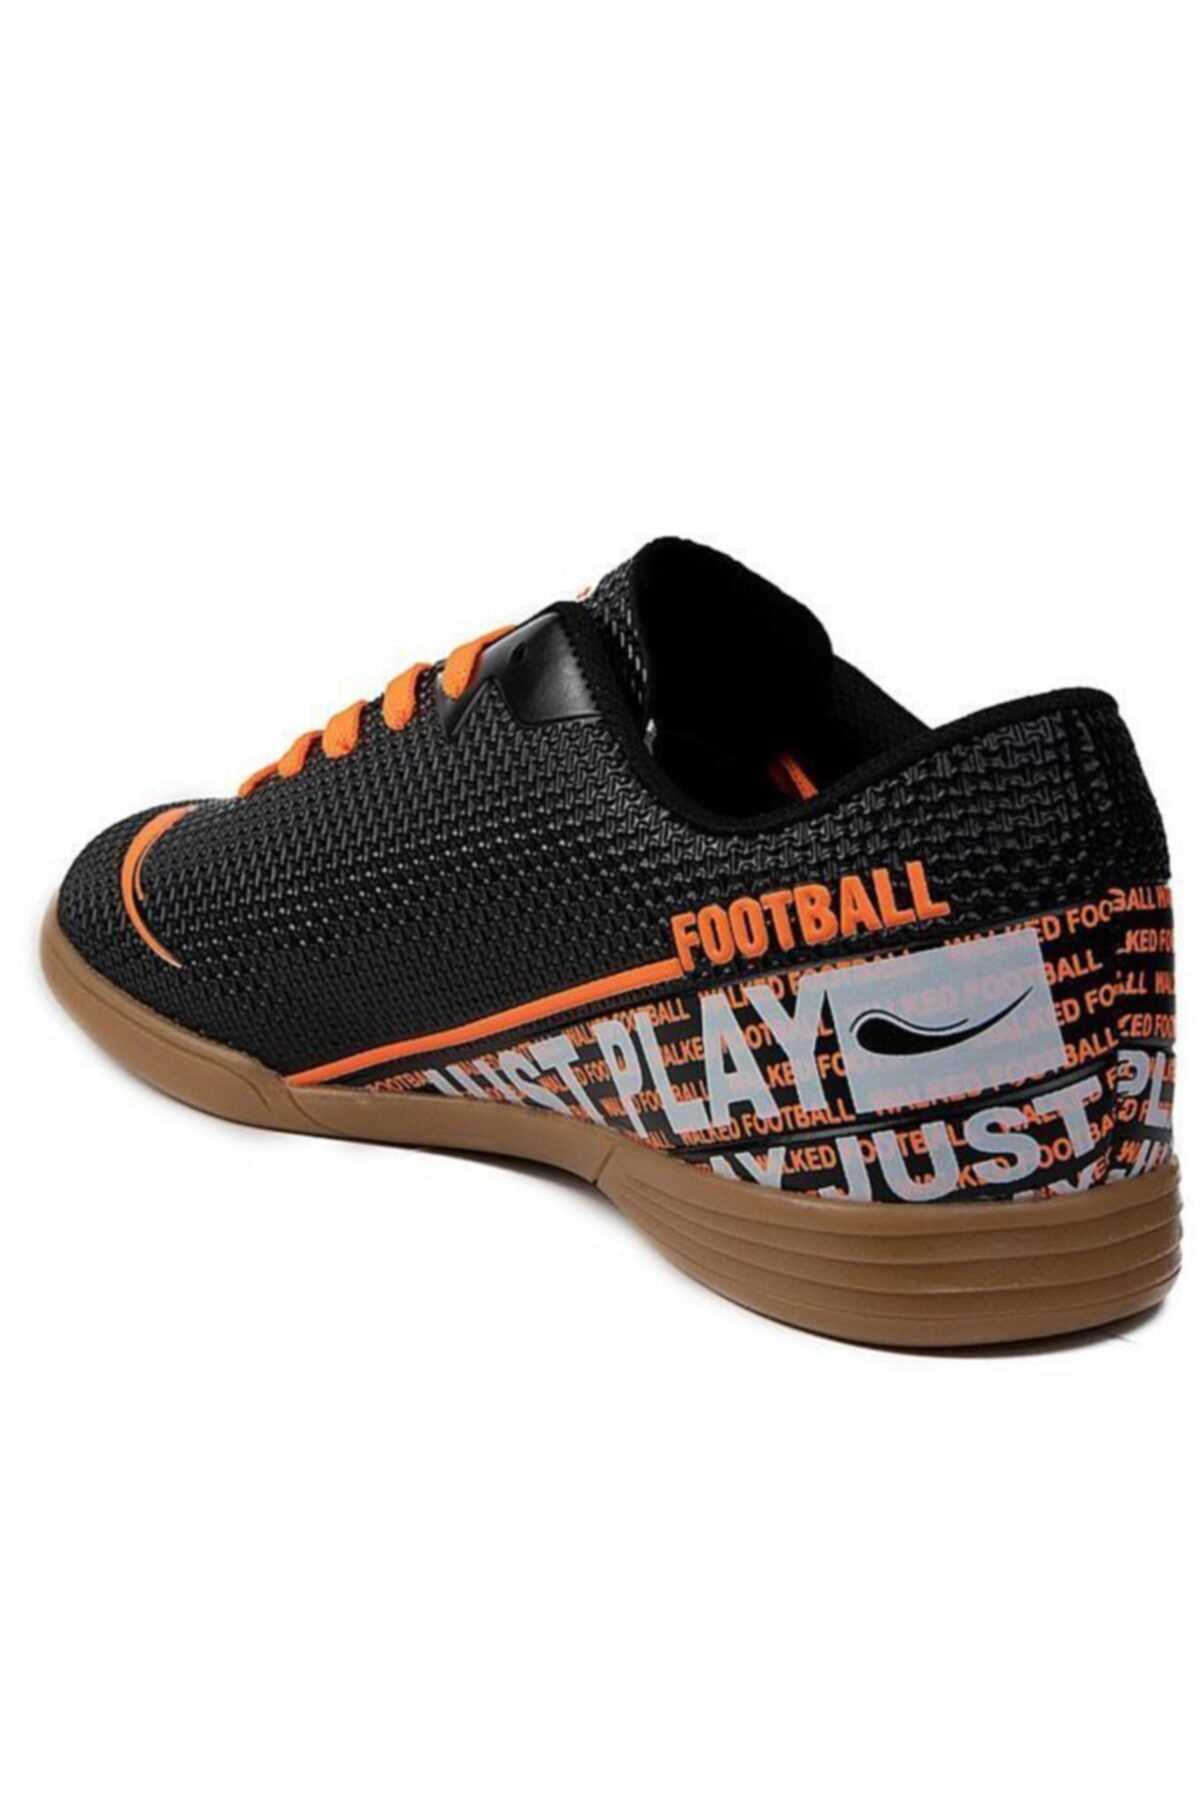 خرید انلاین کفش فوتبال مردانه برند Walked رنگ مشکی کد ty192267254